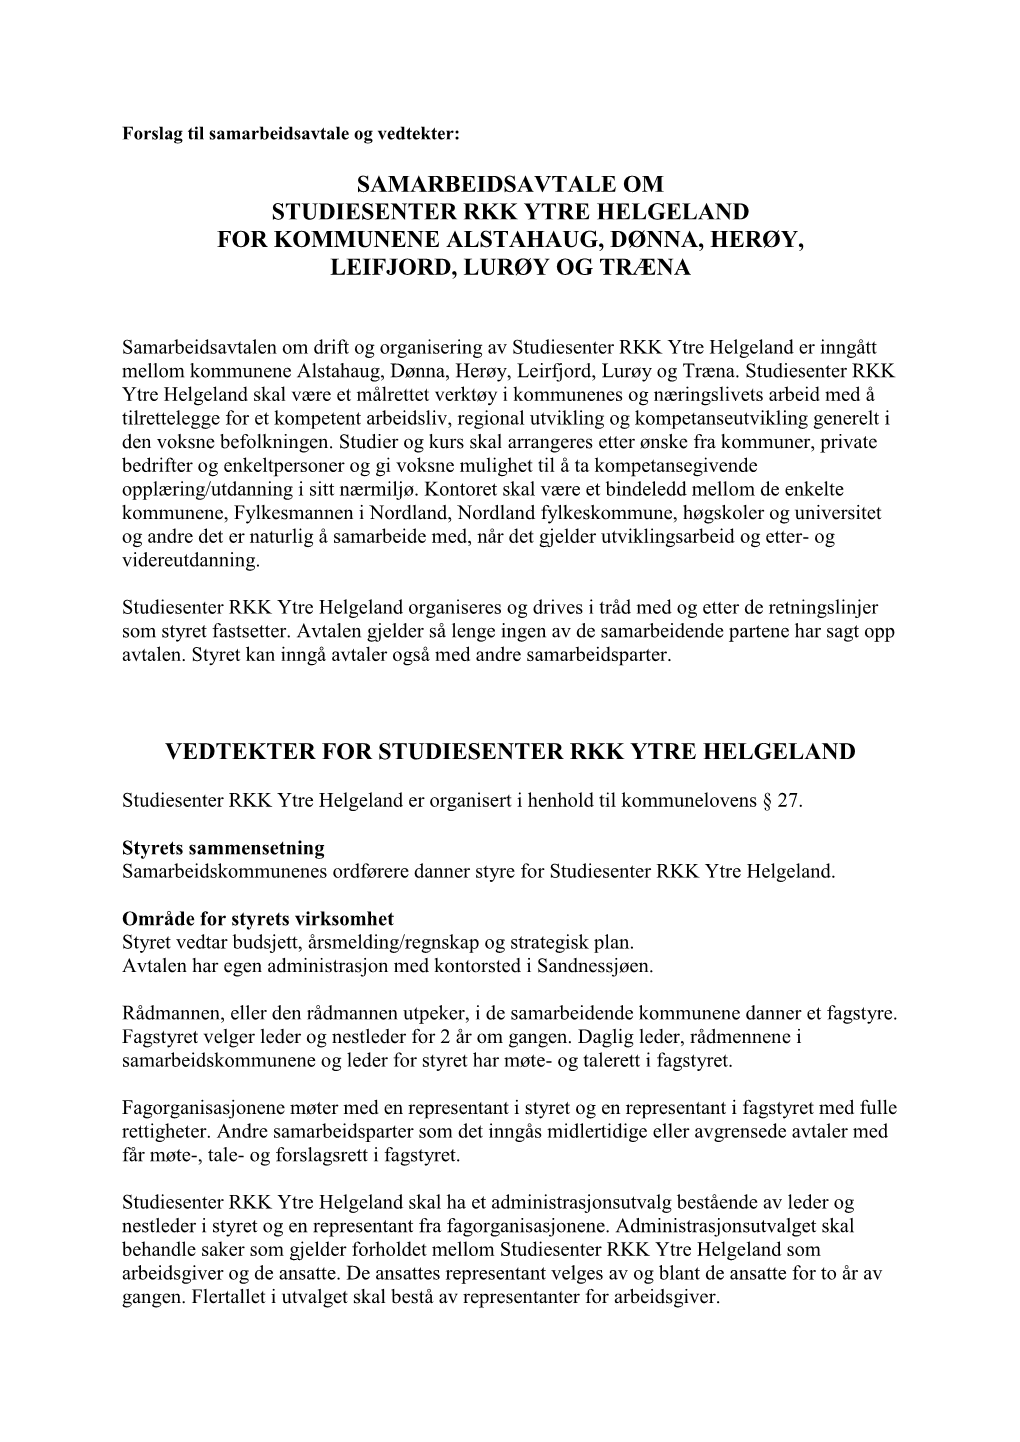 Samarbeidsavtale Om Studiesenter Rkk Ytre Helgeland for Kommunene Alstahaug, Dønna, Herøy, Leifjord, Lurøy Og Træna Vedtek